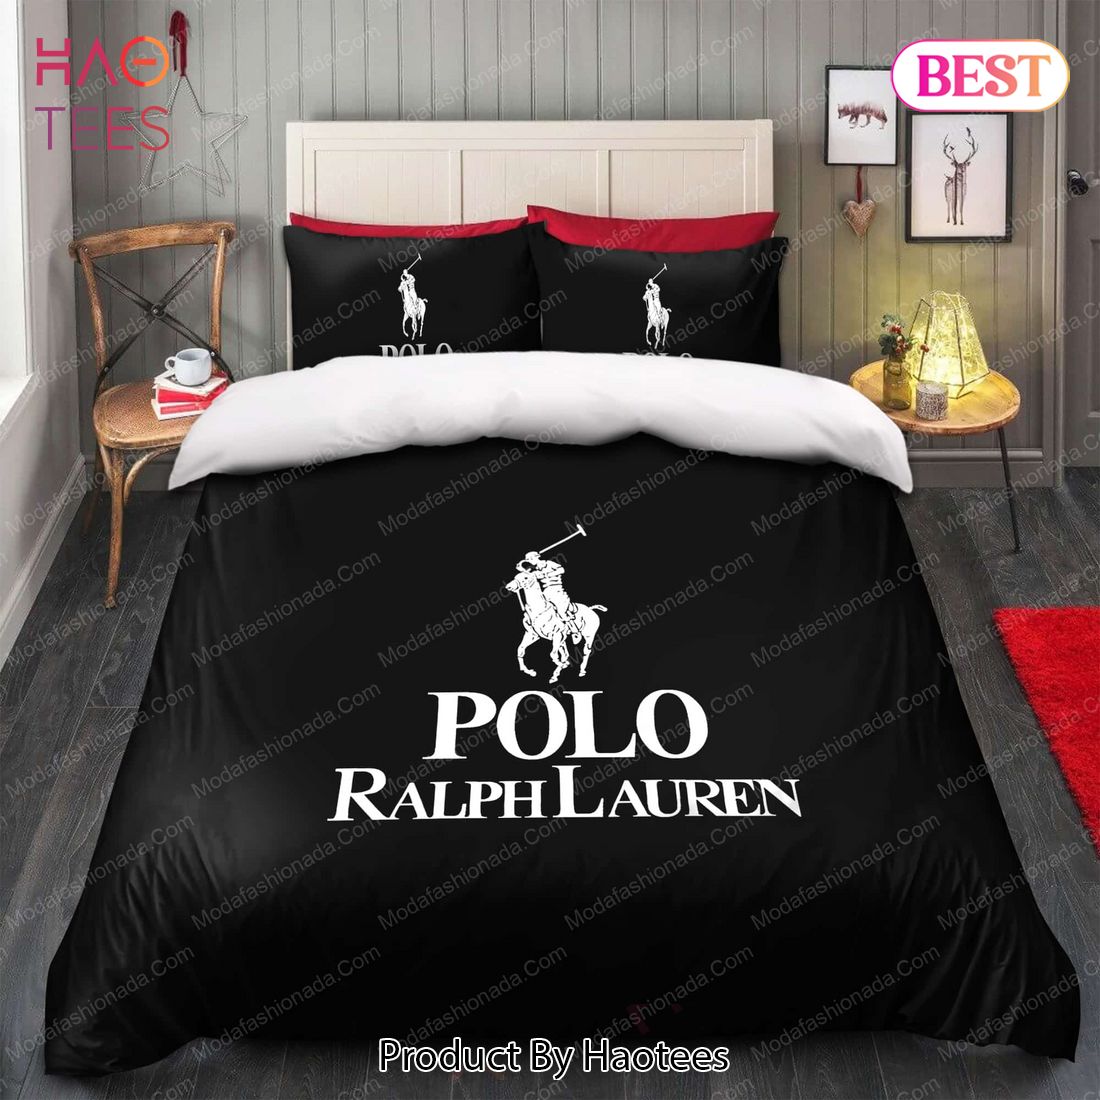 Buy Ralph Lauren Polo Bedding Sets Bed Sets, Bedroom Sets, Comforter Sets,  Duvet Cover, Bedspread